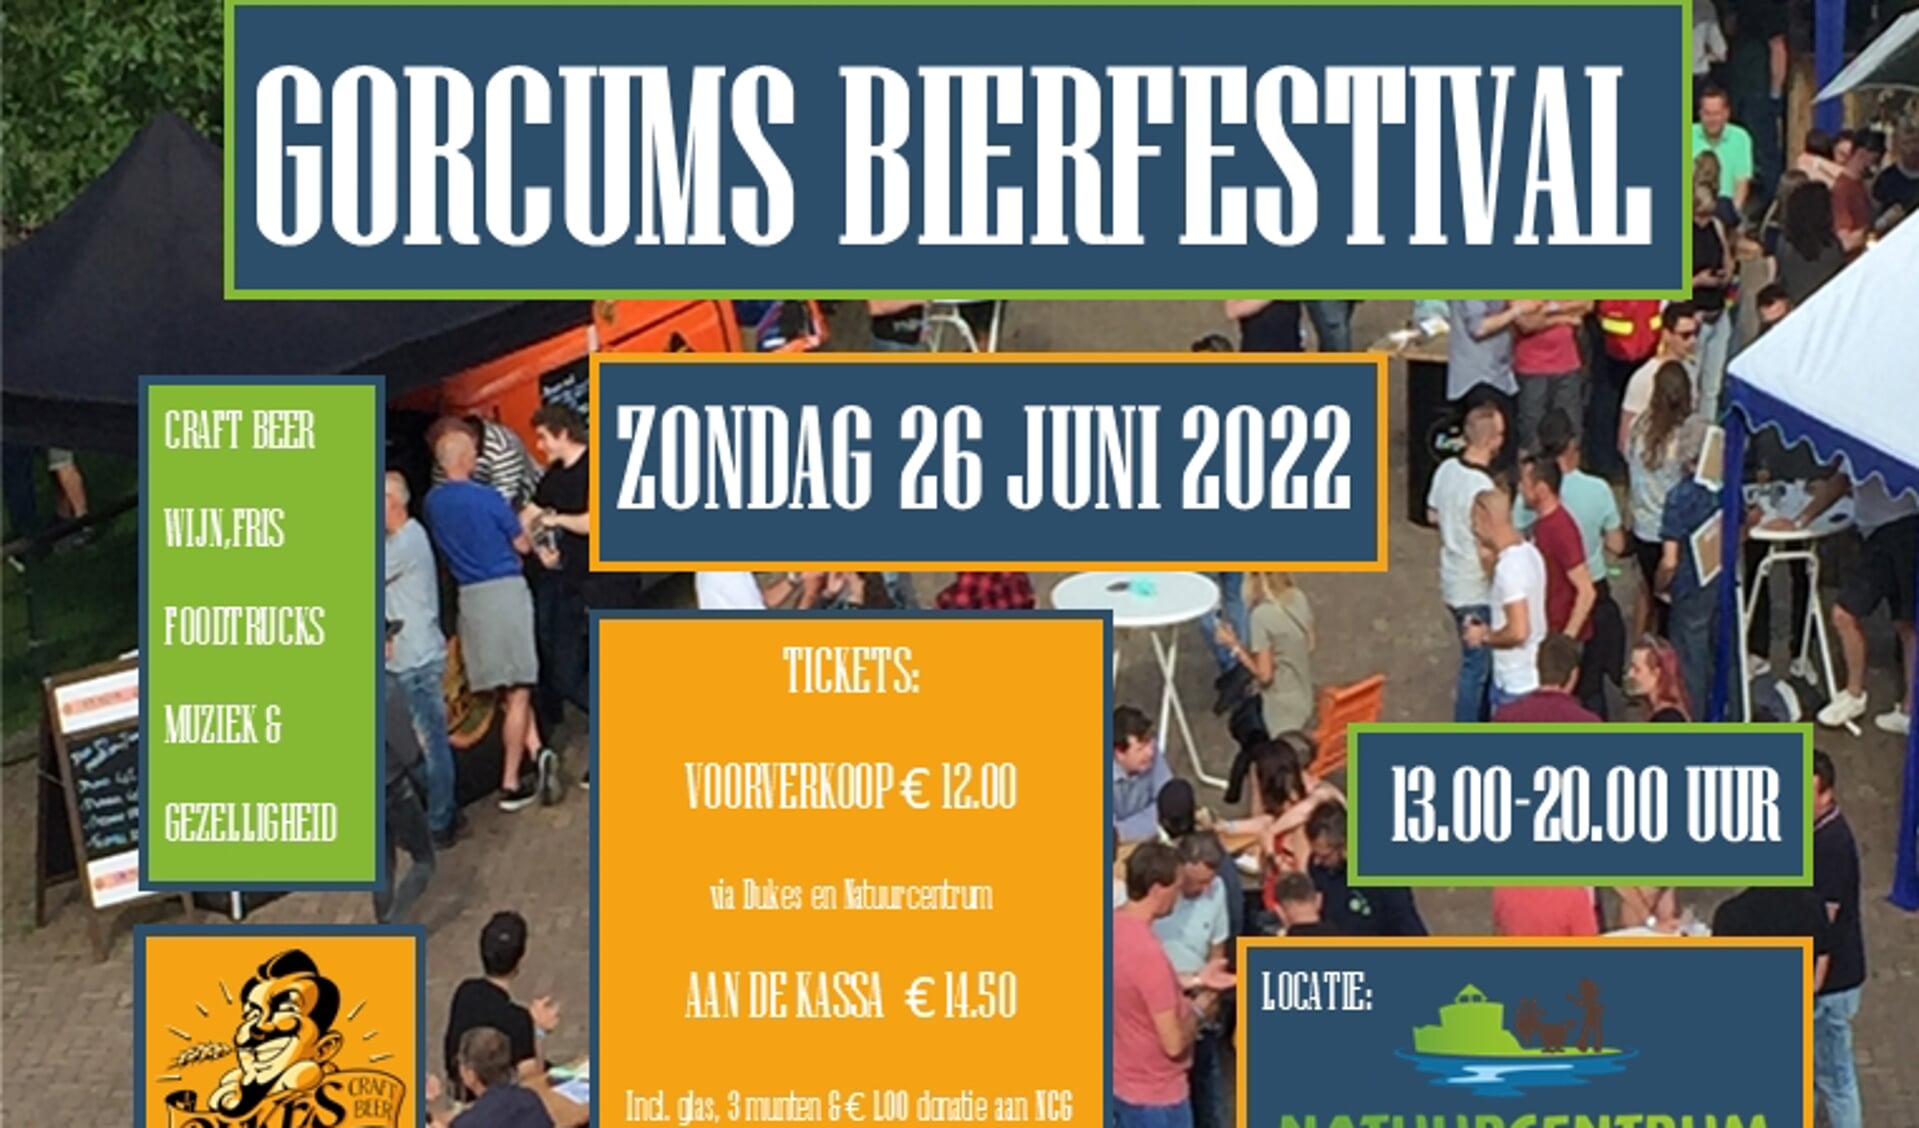 Gorcums Bierfestival 26 juni 2022